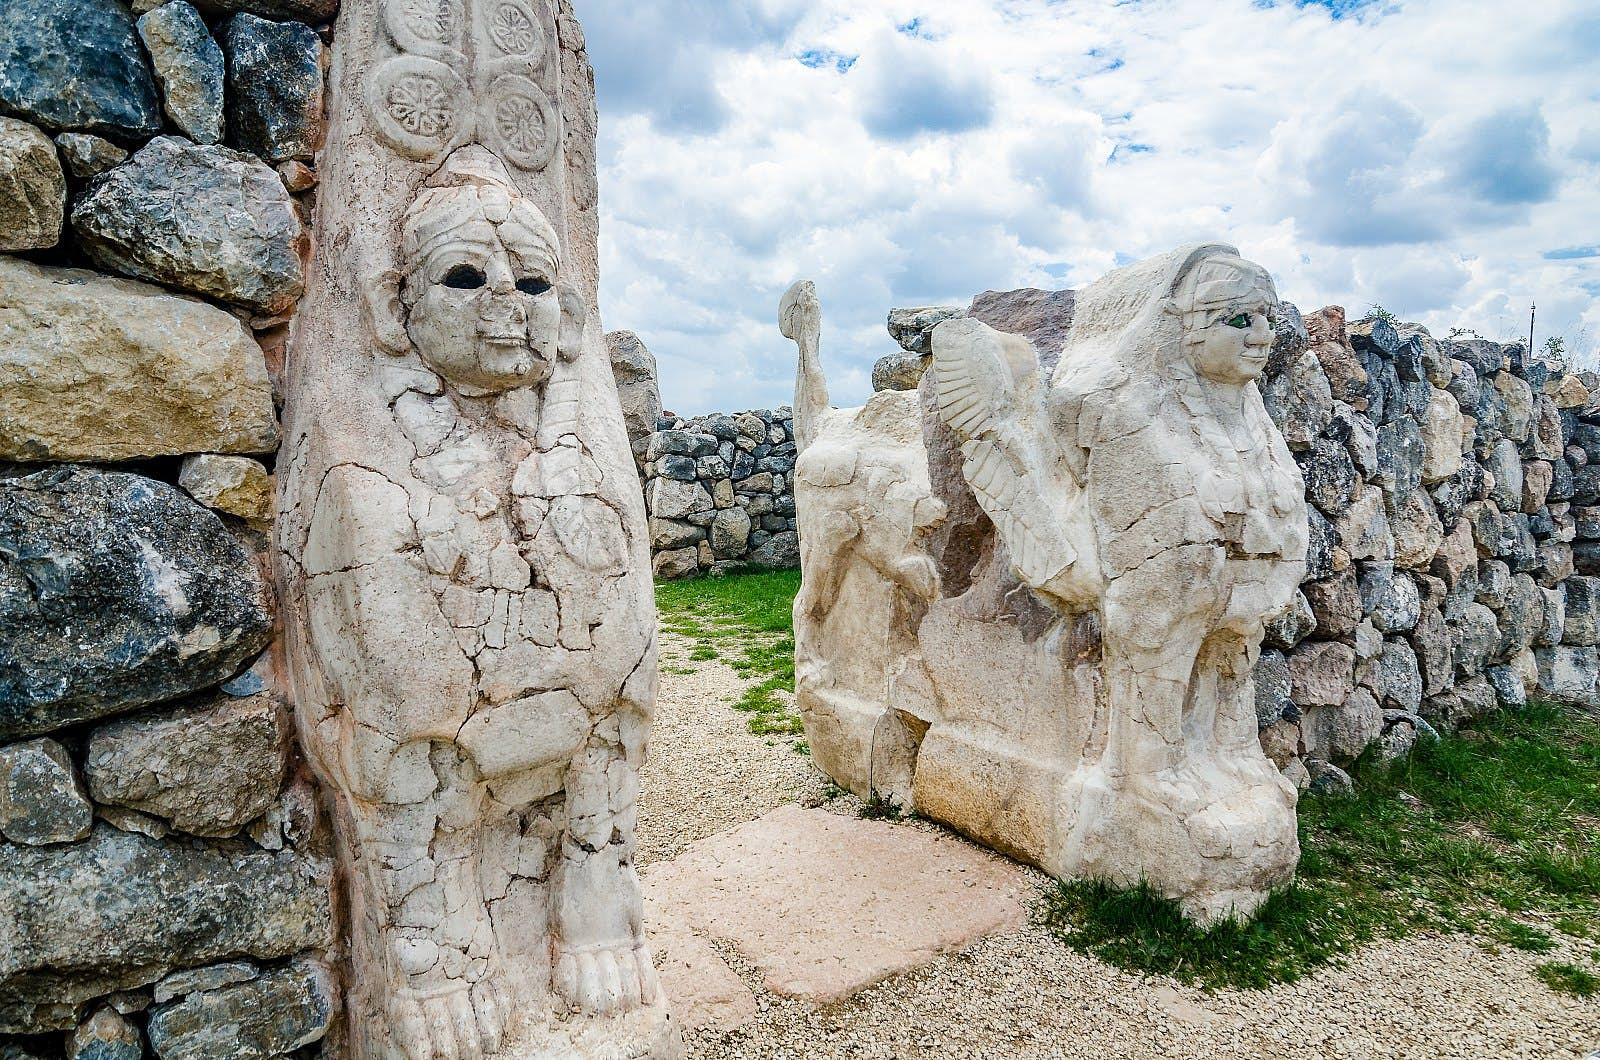 Khám phá những di tích cổ đại kỳ lạ chỉ có ở Thổ Nhĩ Kỳ - 2